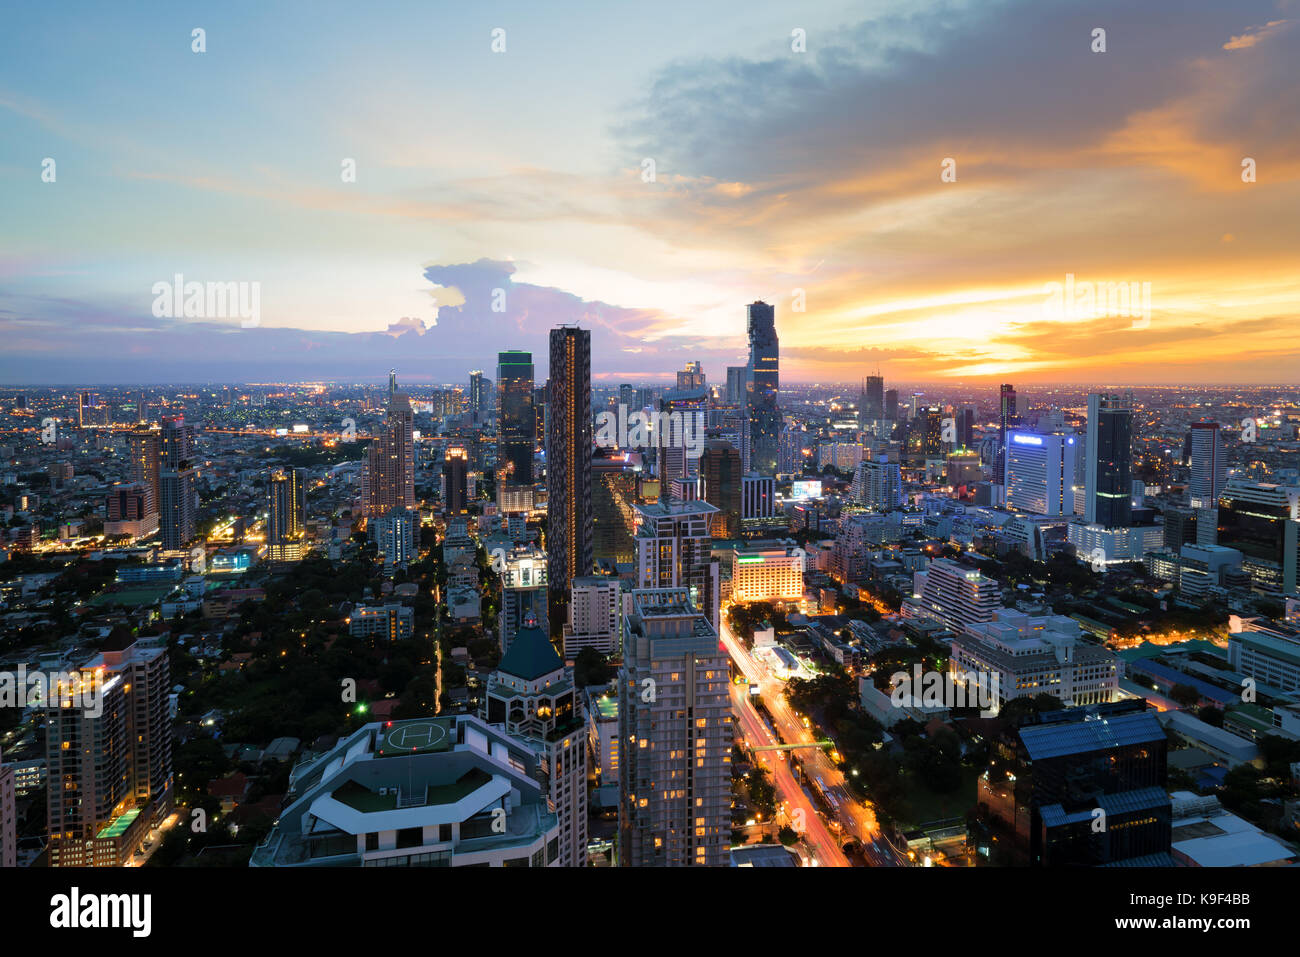 Immeuble moderne dans le quartier des affaires de Bangkok à Bangkok city skyline, au crépuscule, avec la Thaïlande. Banque D'Images